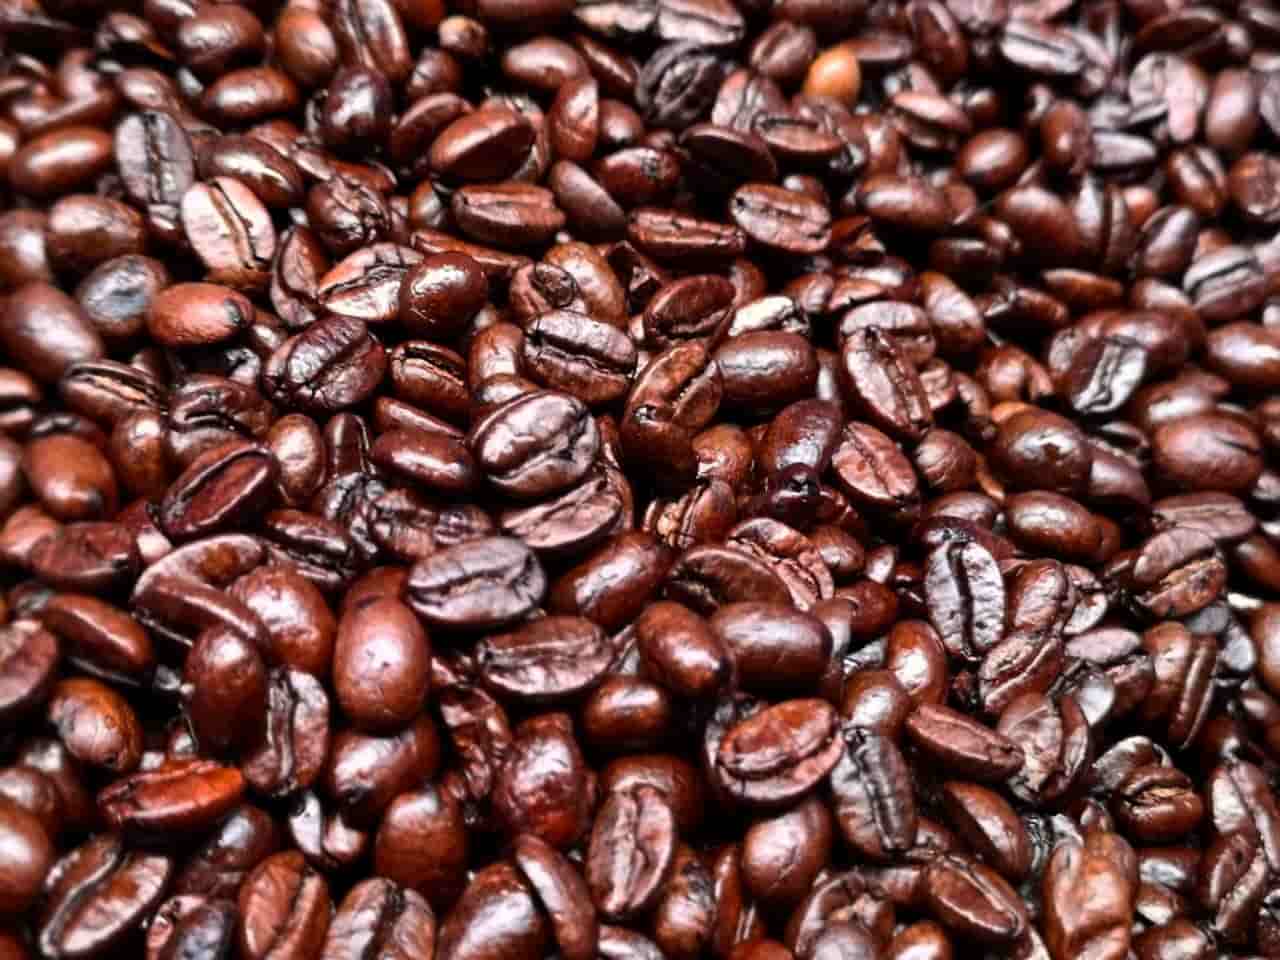 ¿Qué tiene de malo el café oscuro? | GAS UP! MASTER COFFEE